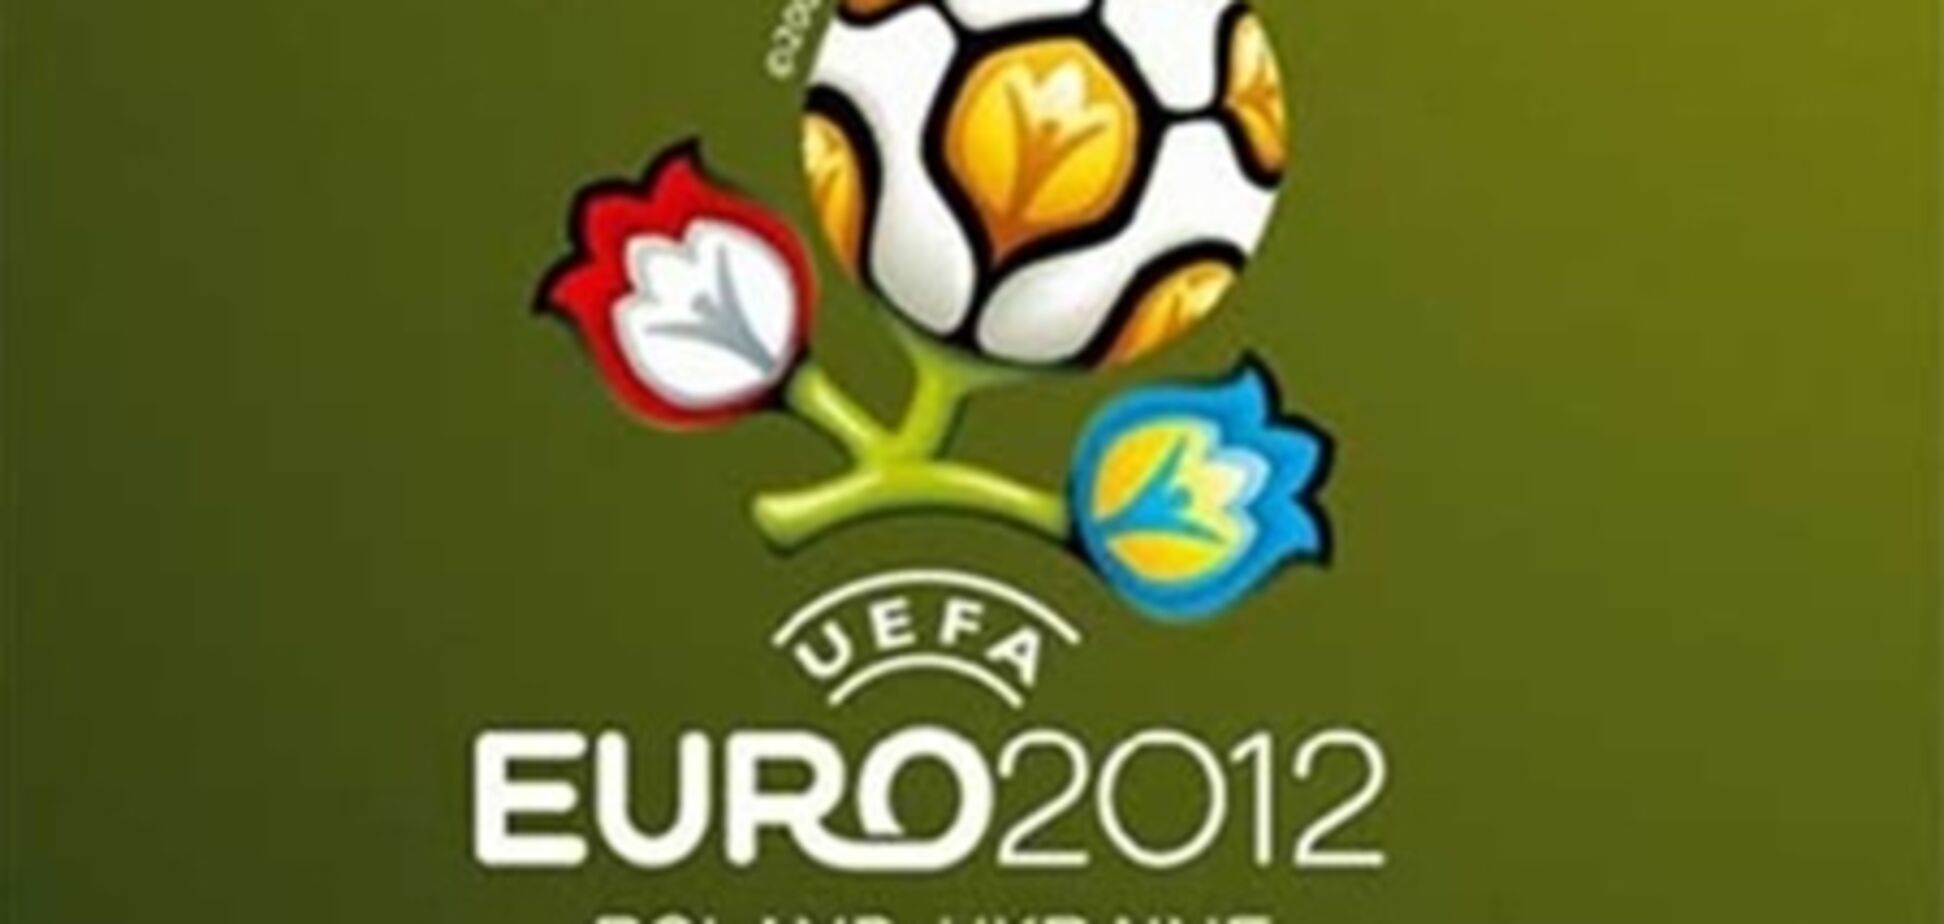 Україна гідно прийме Євро-2012 - Колесніков